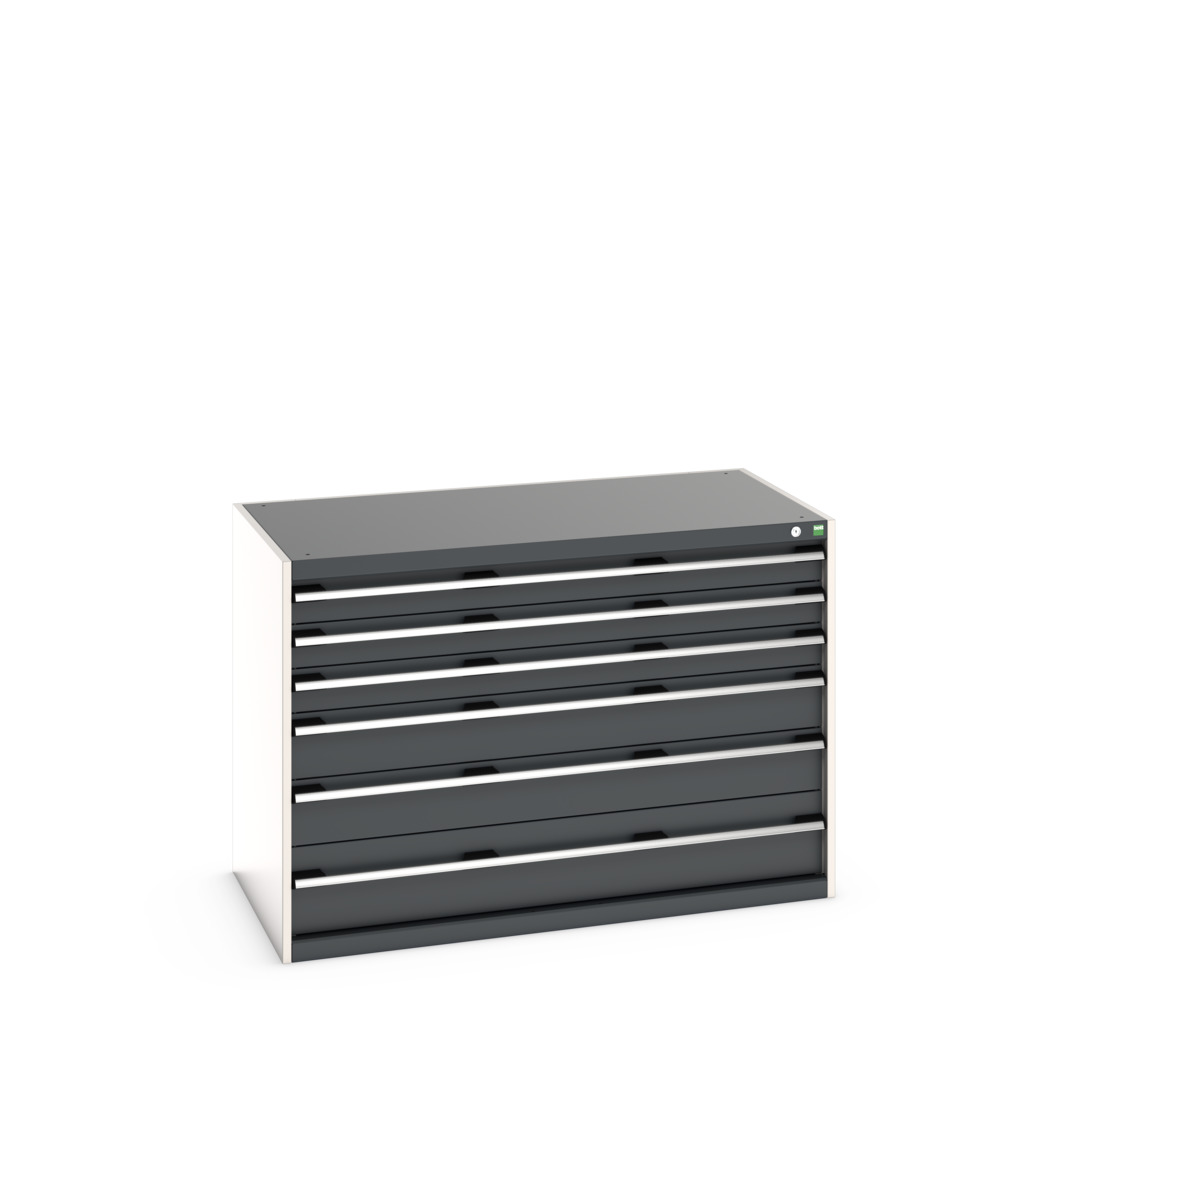 40030085.19V - cubio drawer cabinet